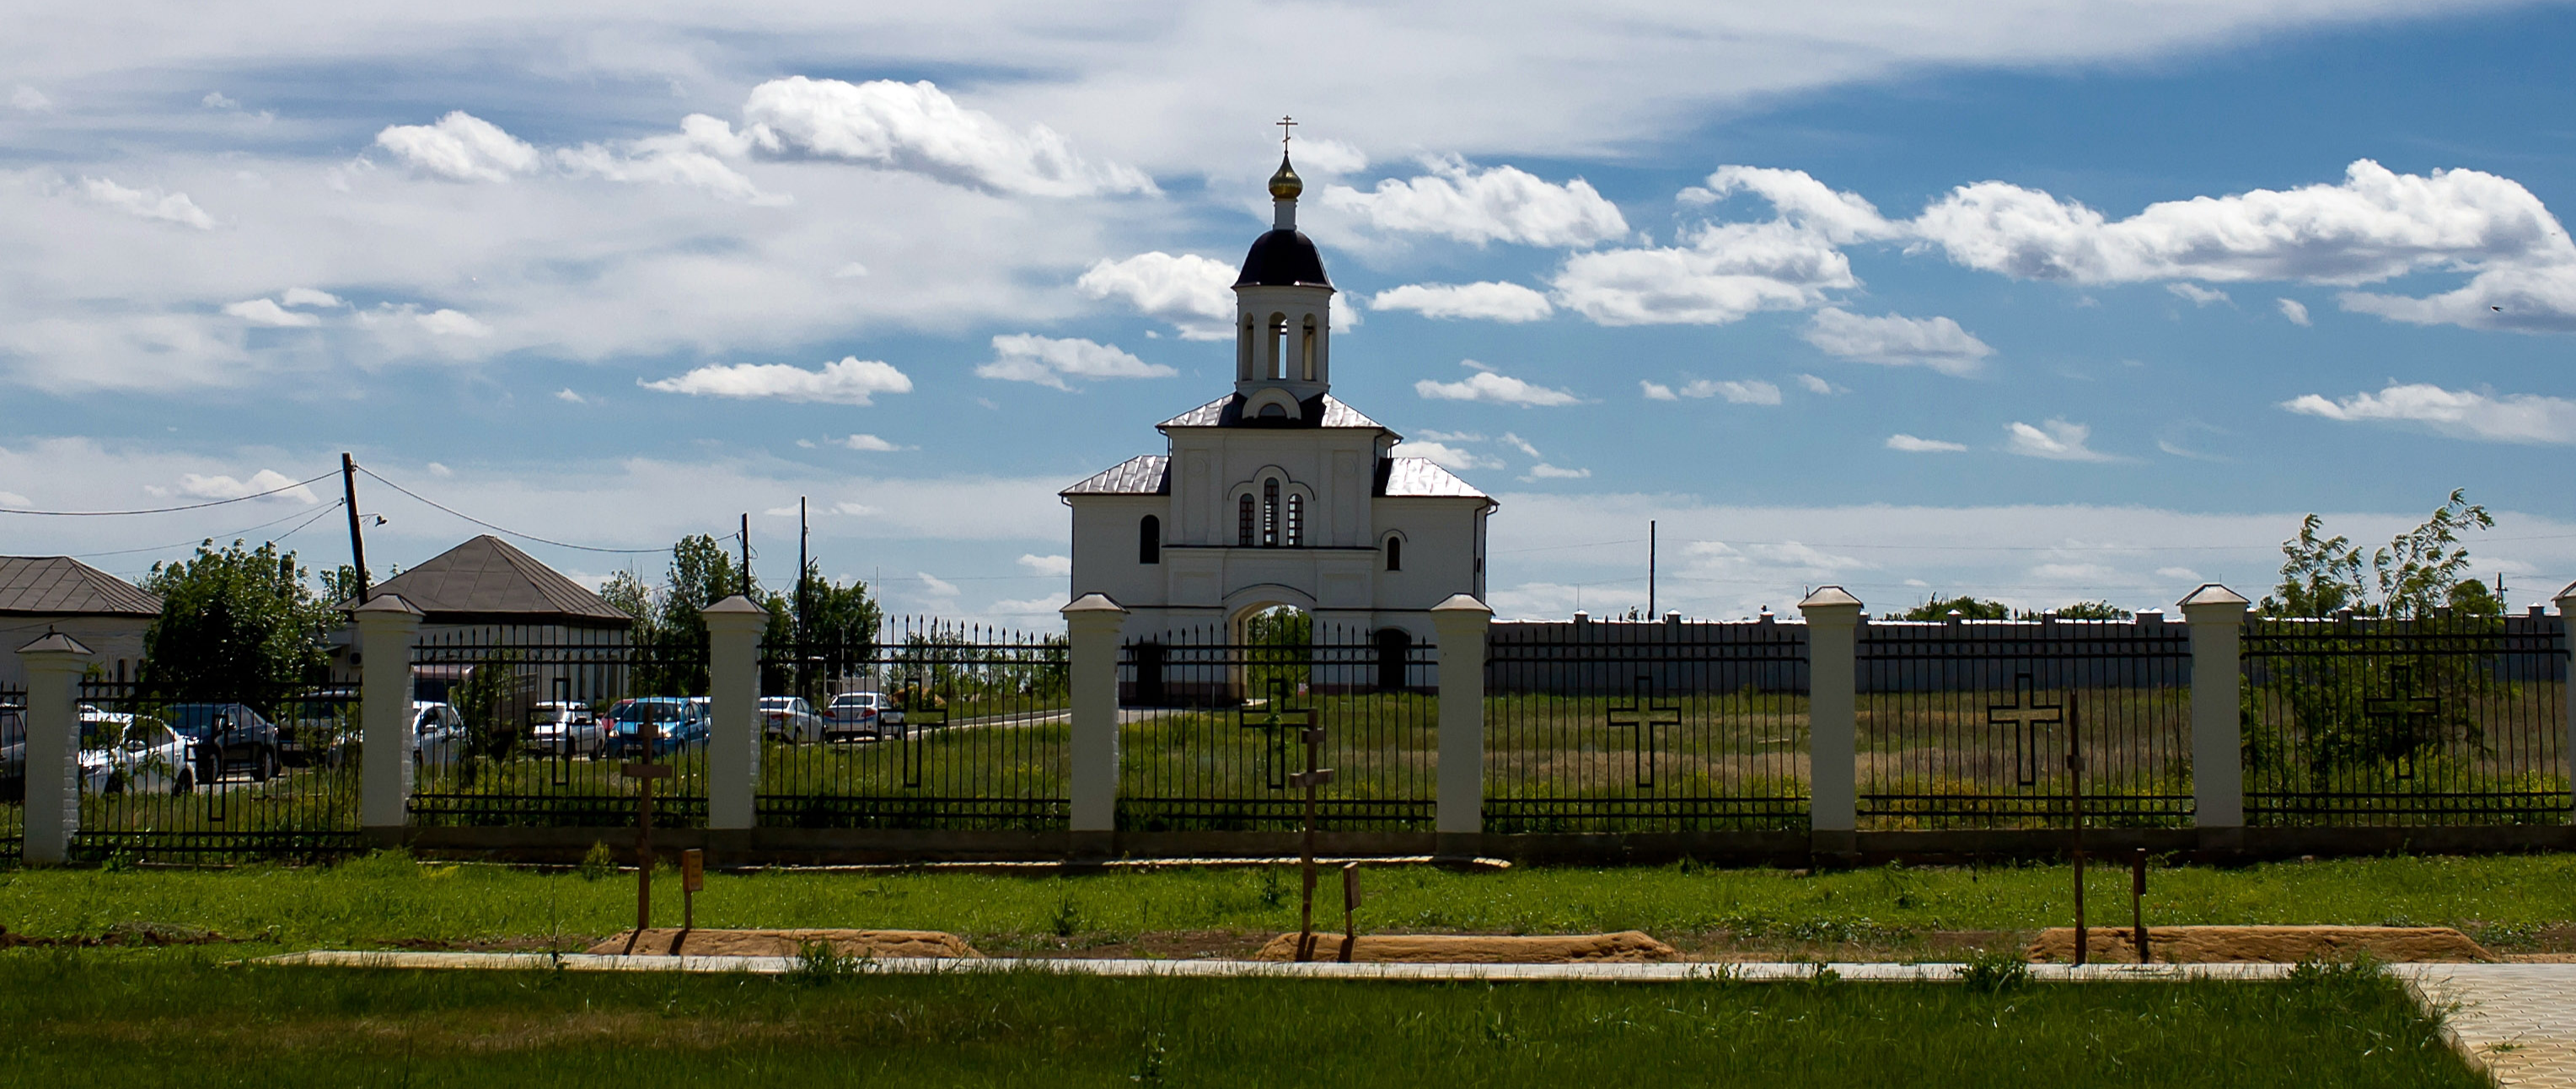 Экскурсия в купеческий город Дубовка с посещением Дубовского монастыря